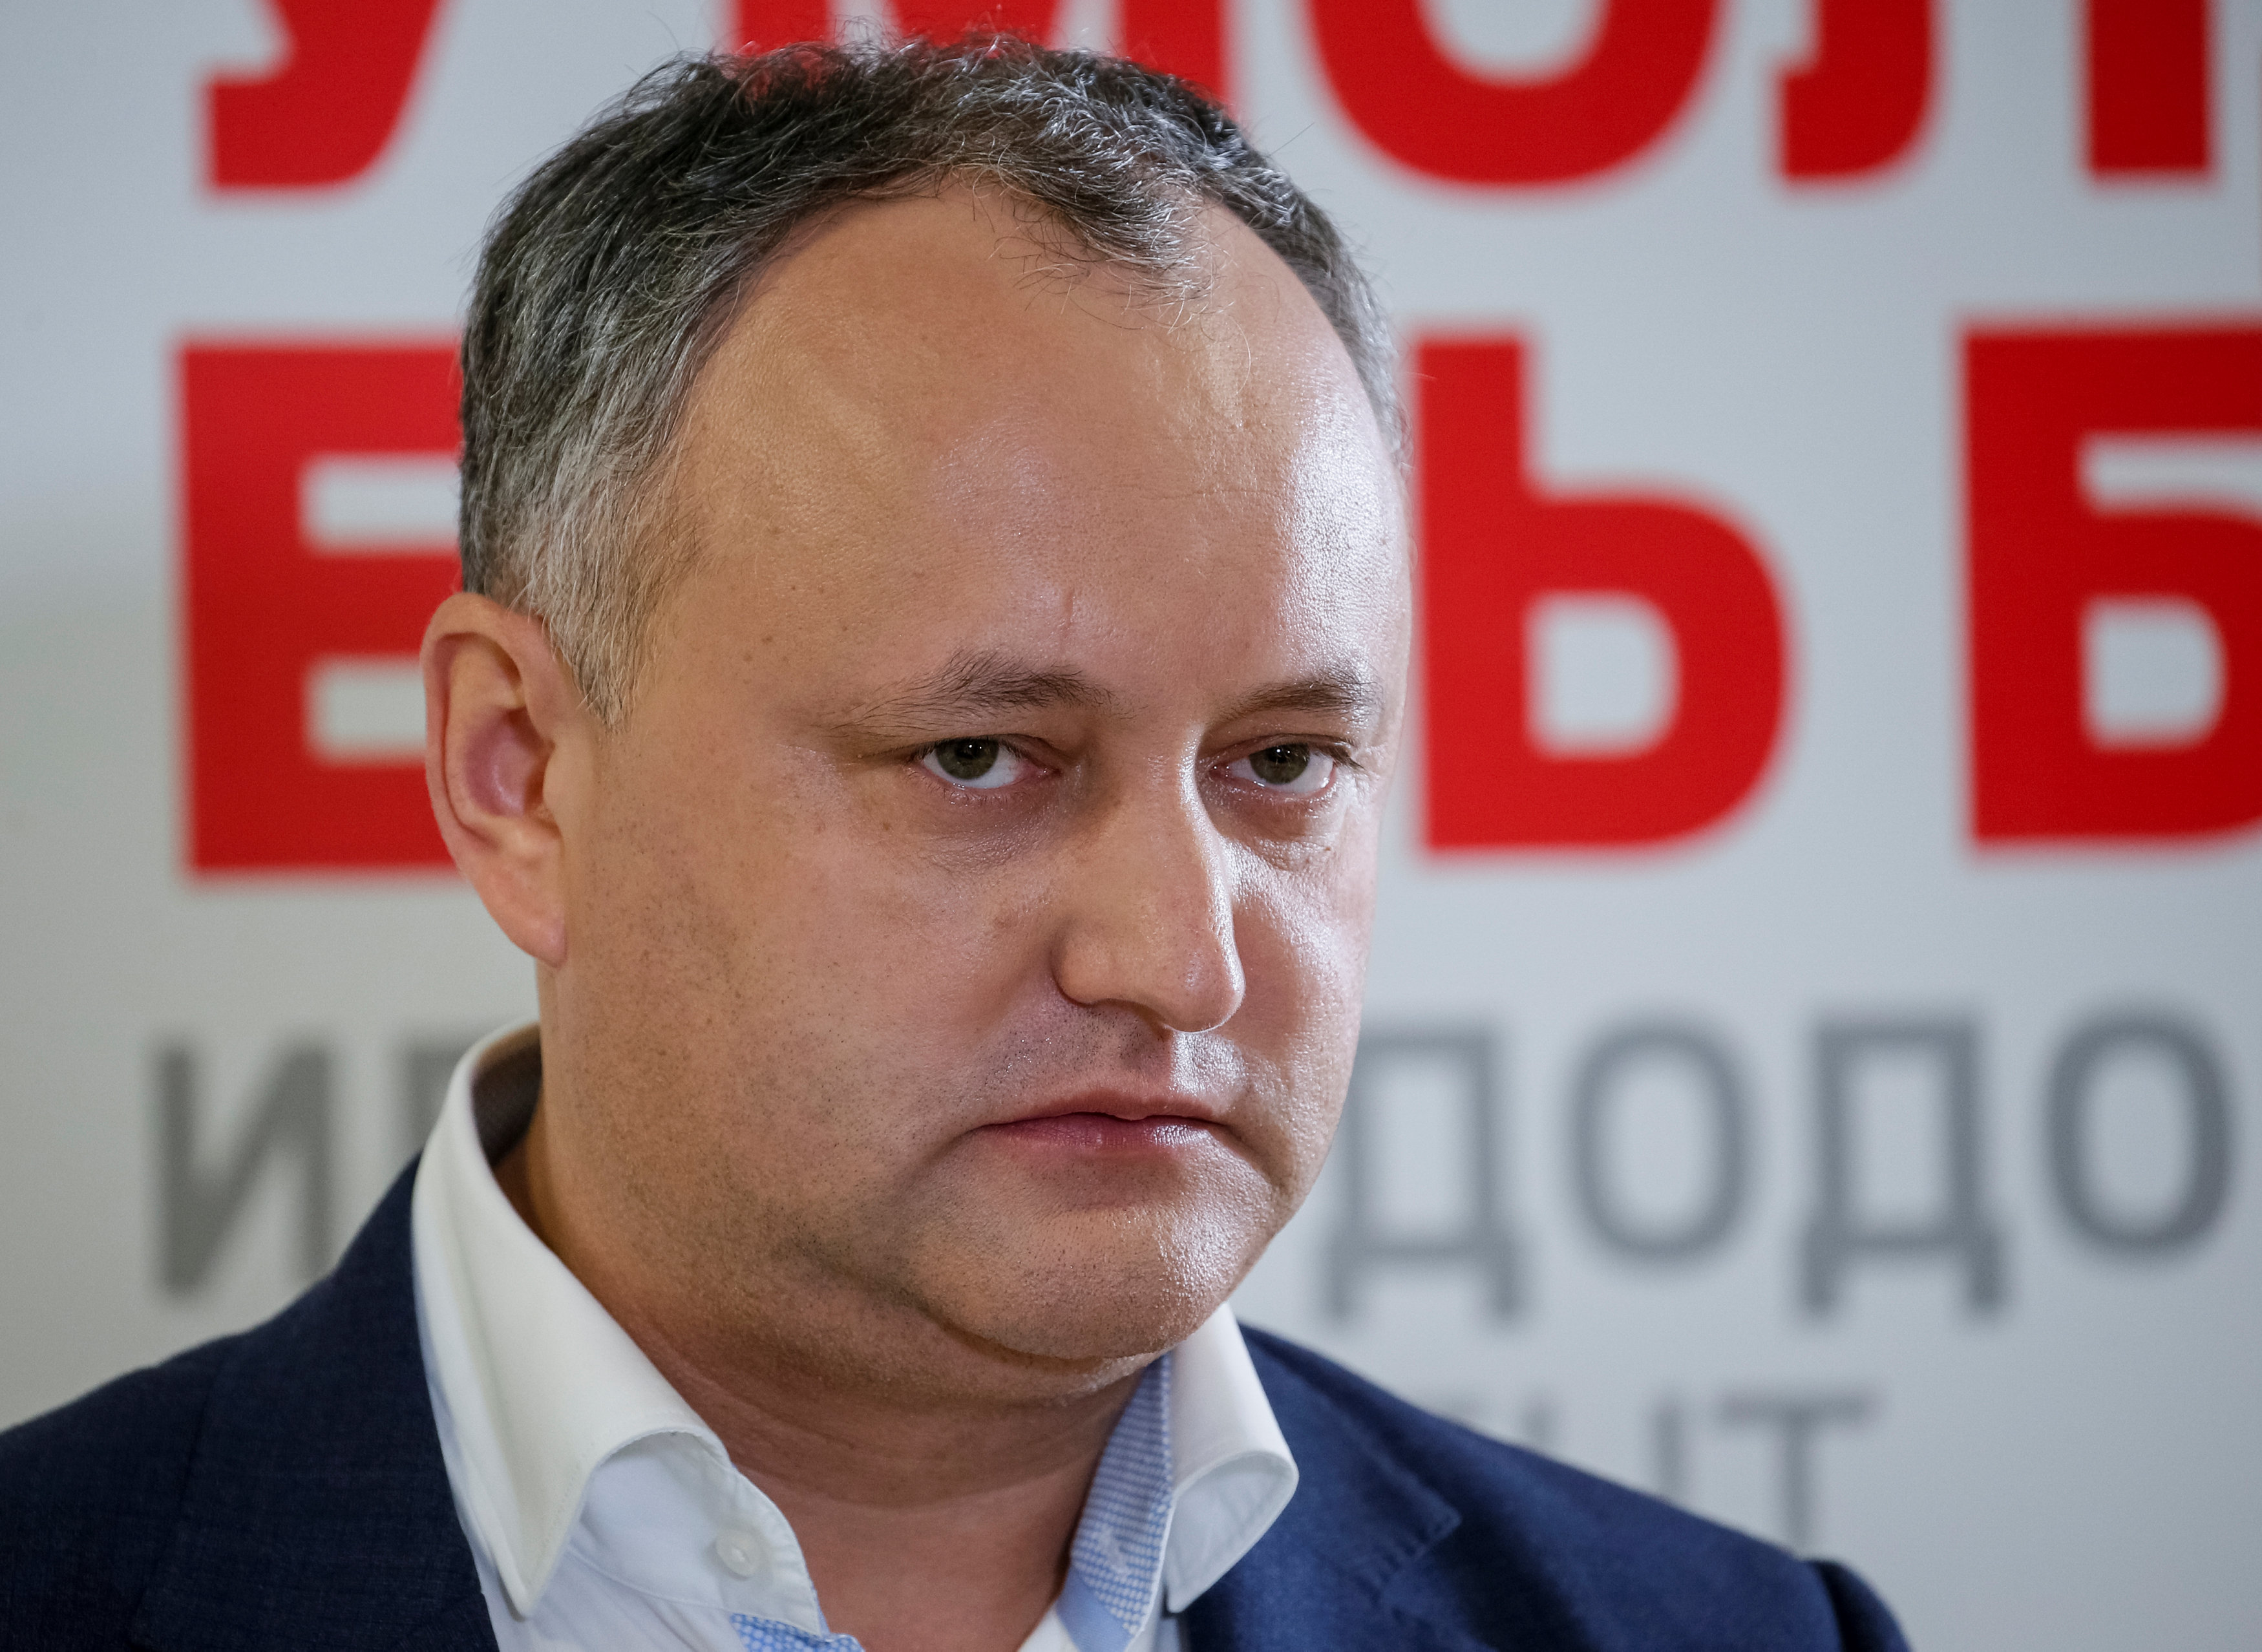 Μολδαβία: Σε δεύτερο γύρο οι προεδρικές εκλογές, μπροστά ο φιλορώσος Ντόντον